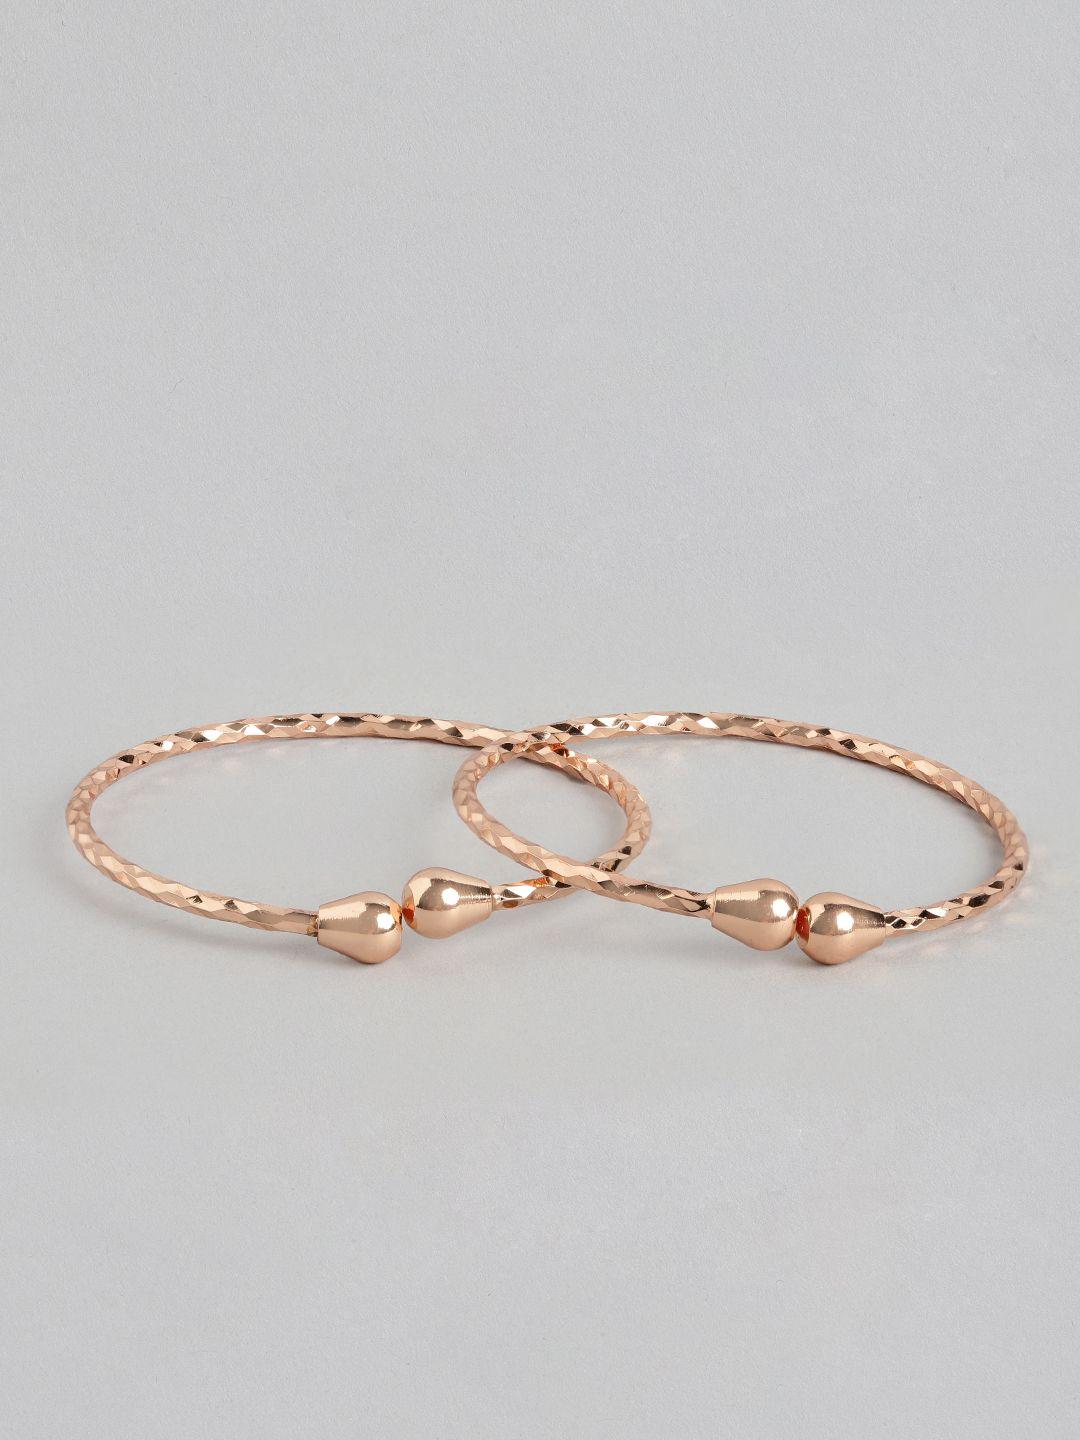 aadvik designs set of 2 rose gold-plated adjustable bangles